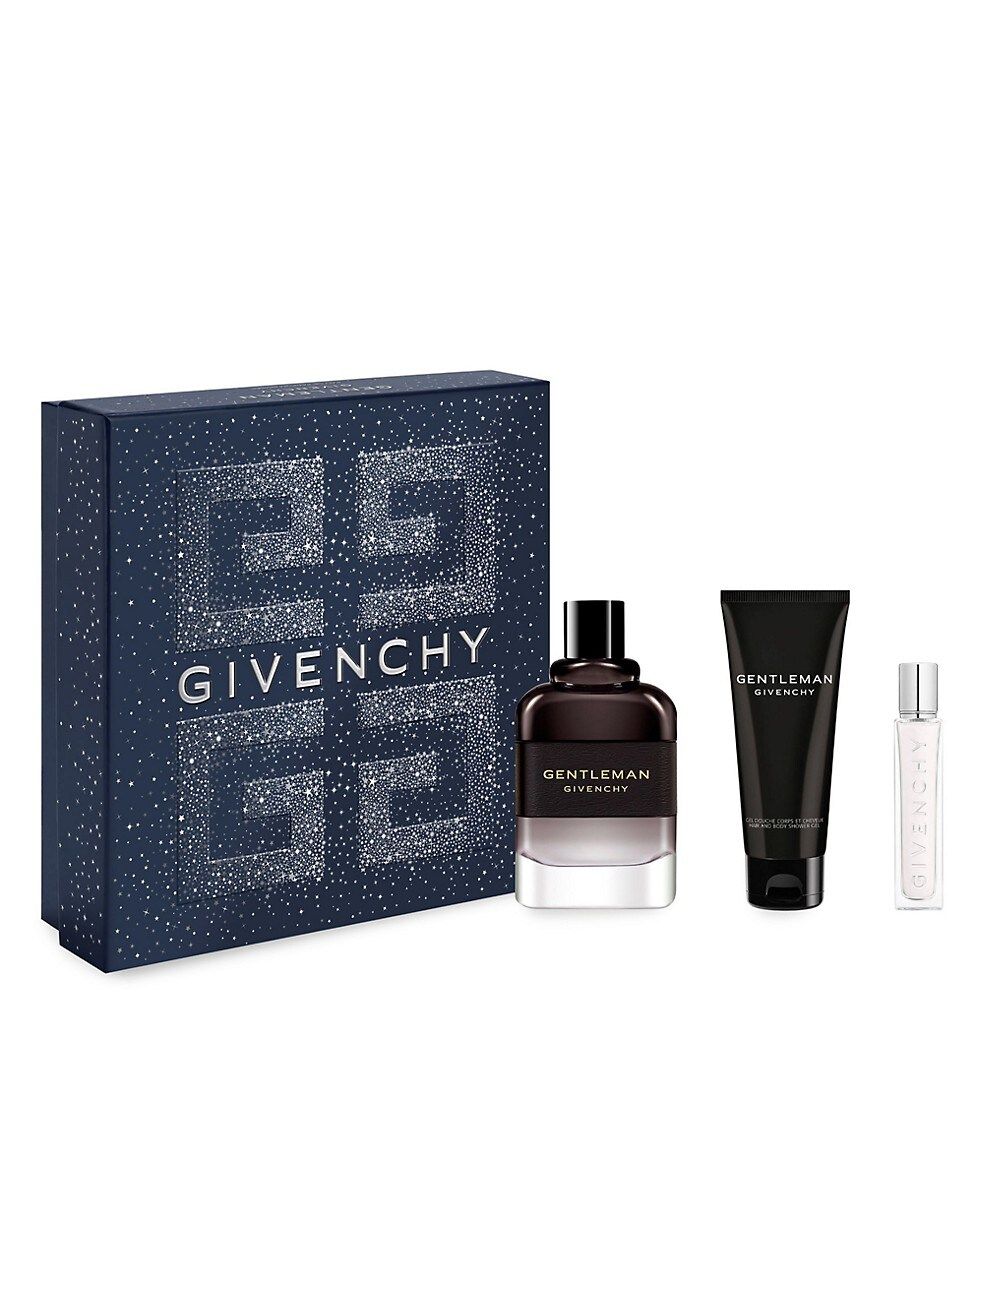 Givenchy Gentleman Eau de Parfum Boisée 3-Piece Gift Set | Saks Fifth Avenue